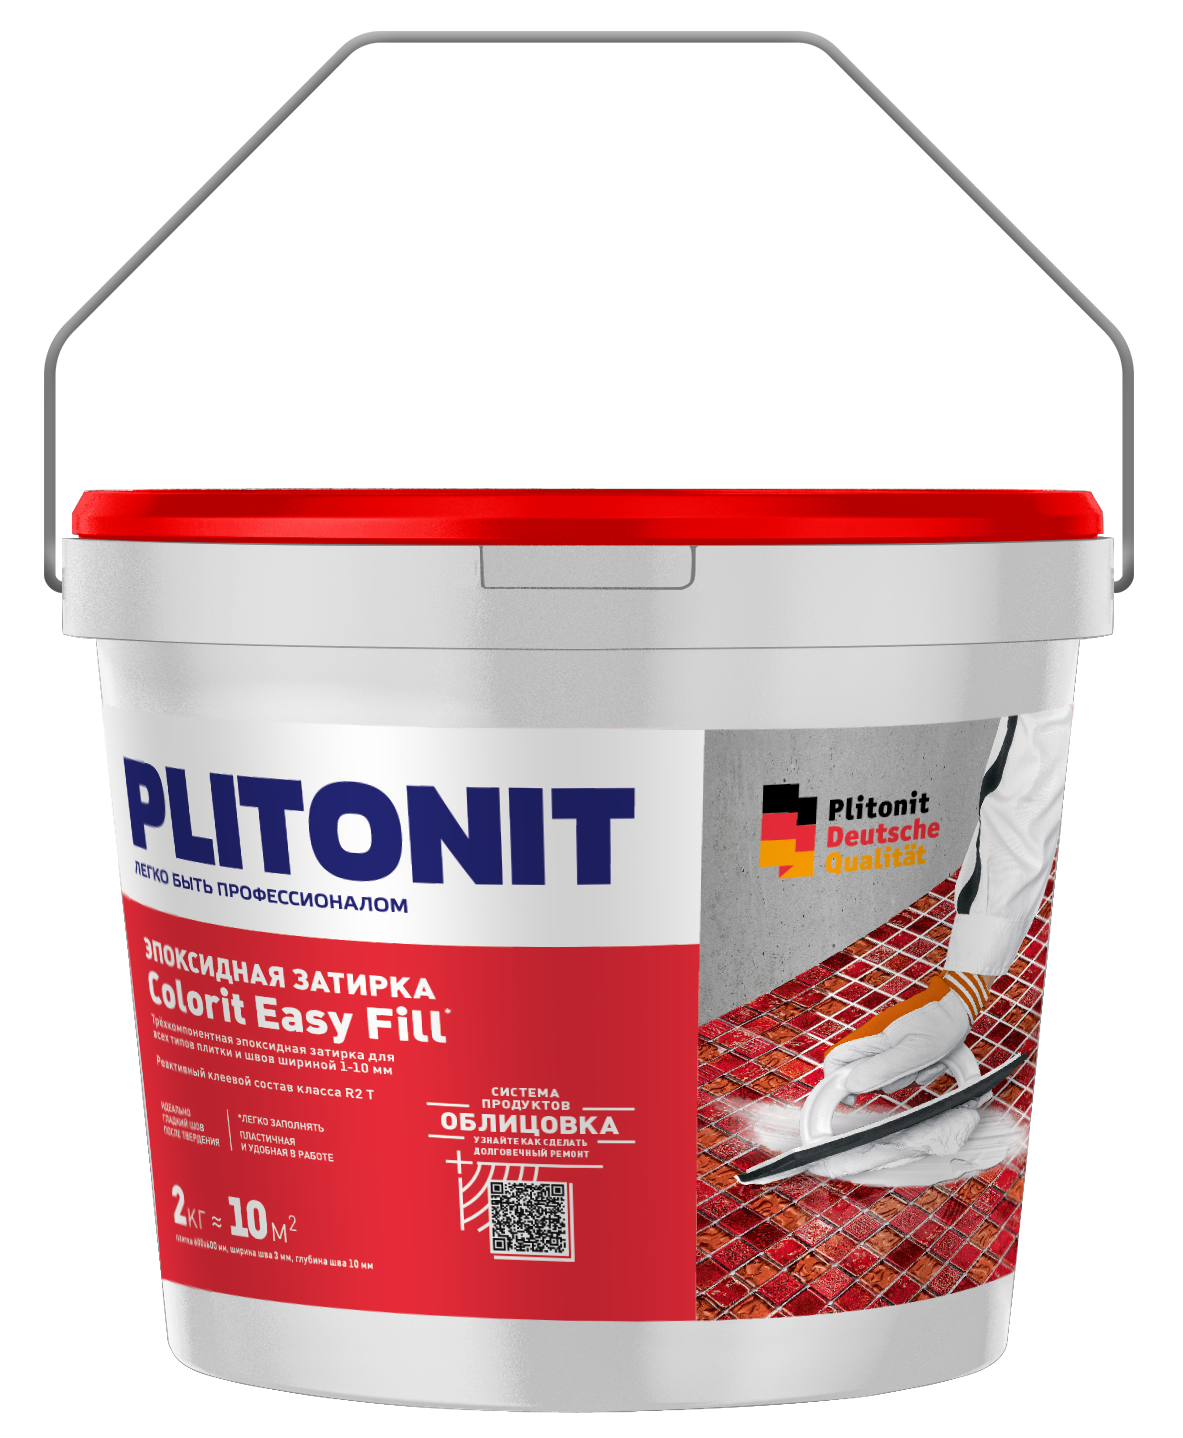 PLITONIT Colorit EasyFill эпоксидная затирка для межплиточных швов и реактивный клей для плитки, аквамариновый 2 кг (96шт/подд.)